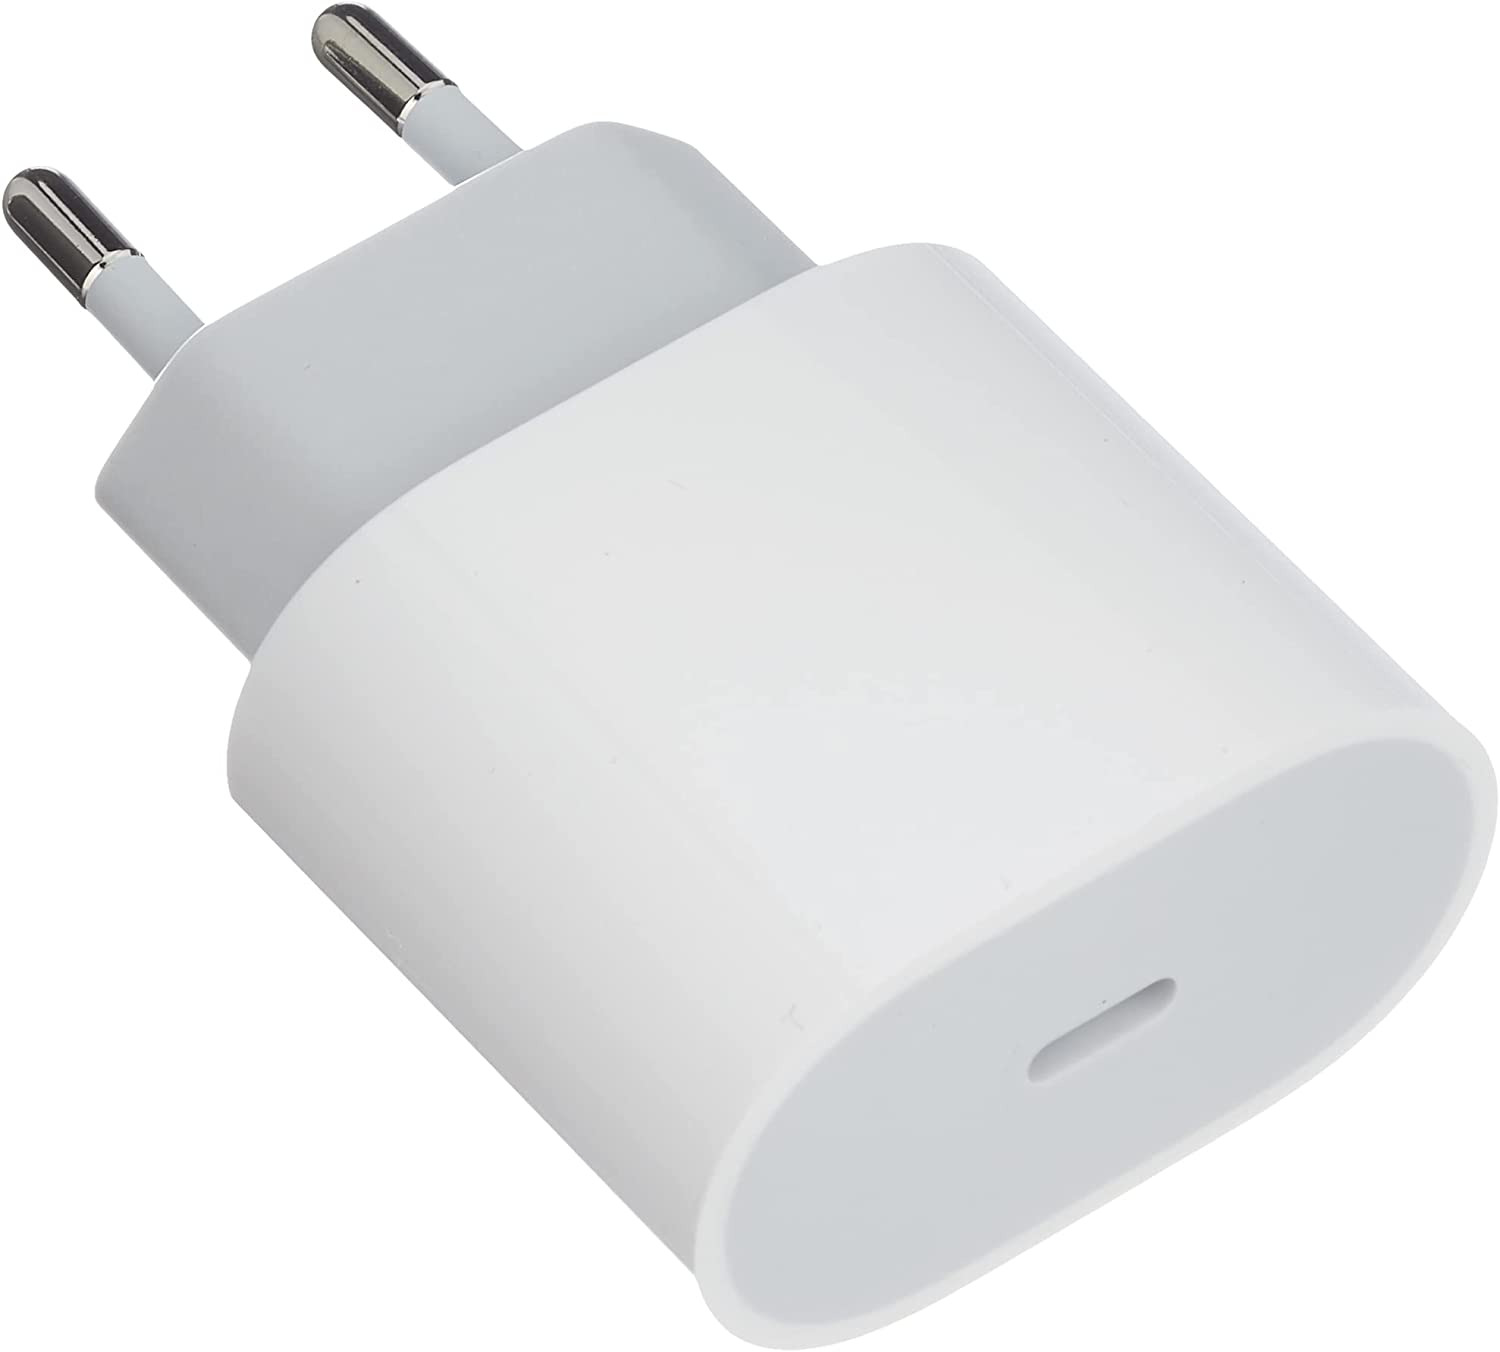 iPhone 15 : chargeur, câble USB-C, coque… quels accessoires choisir ?